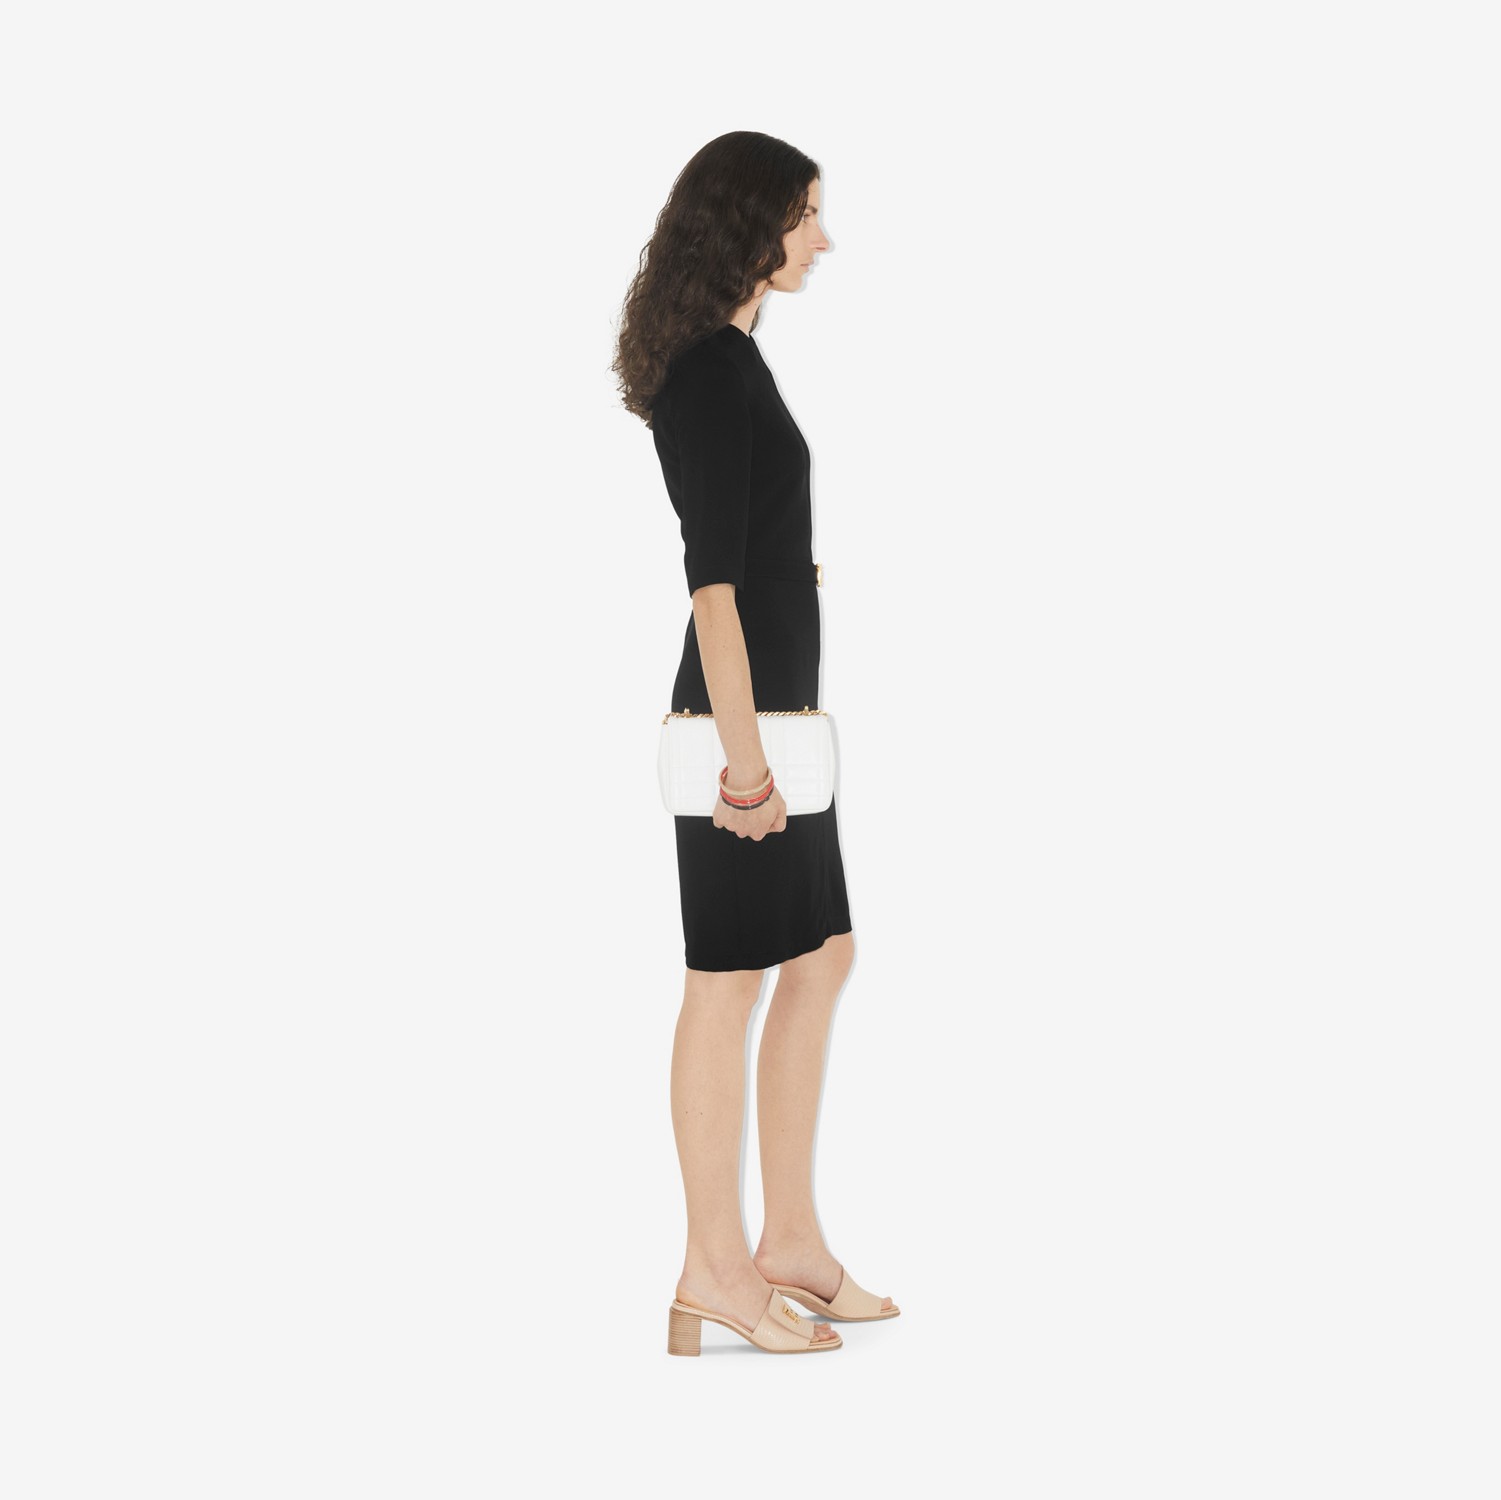 Viskose-Kleid mit Monogrammmotiv-Gürtel (Schwarz) - Damen | Burberry®